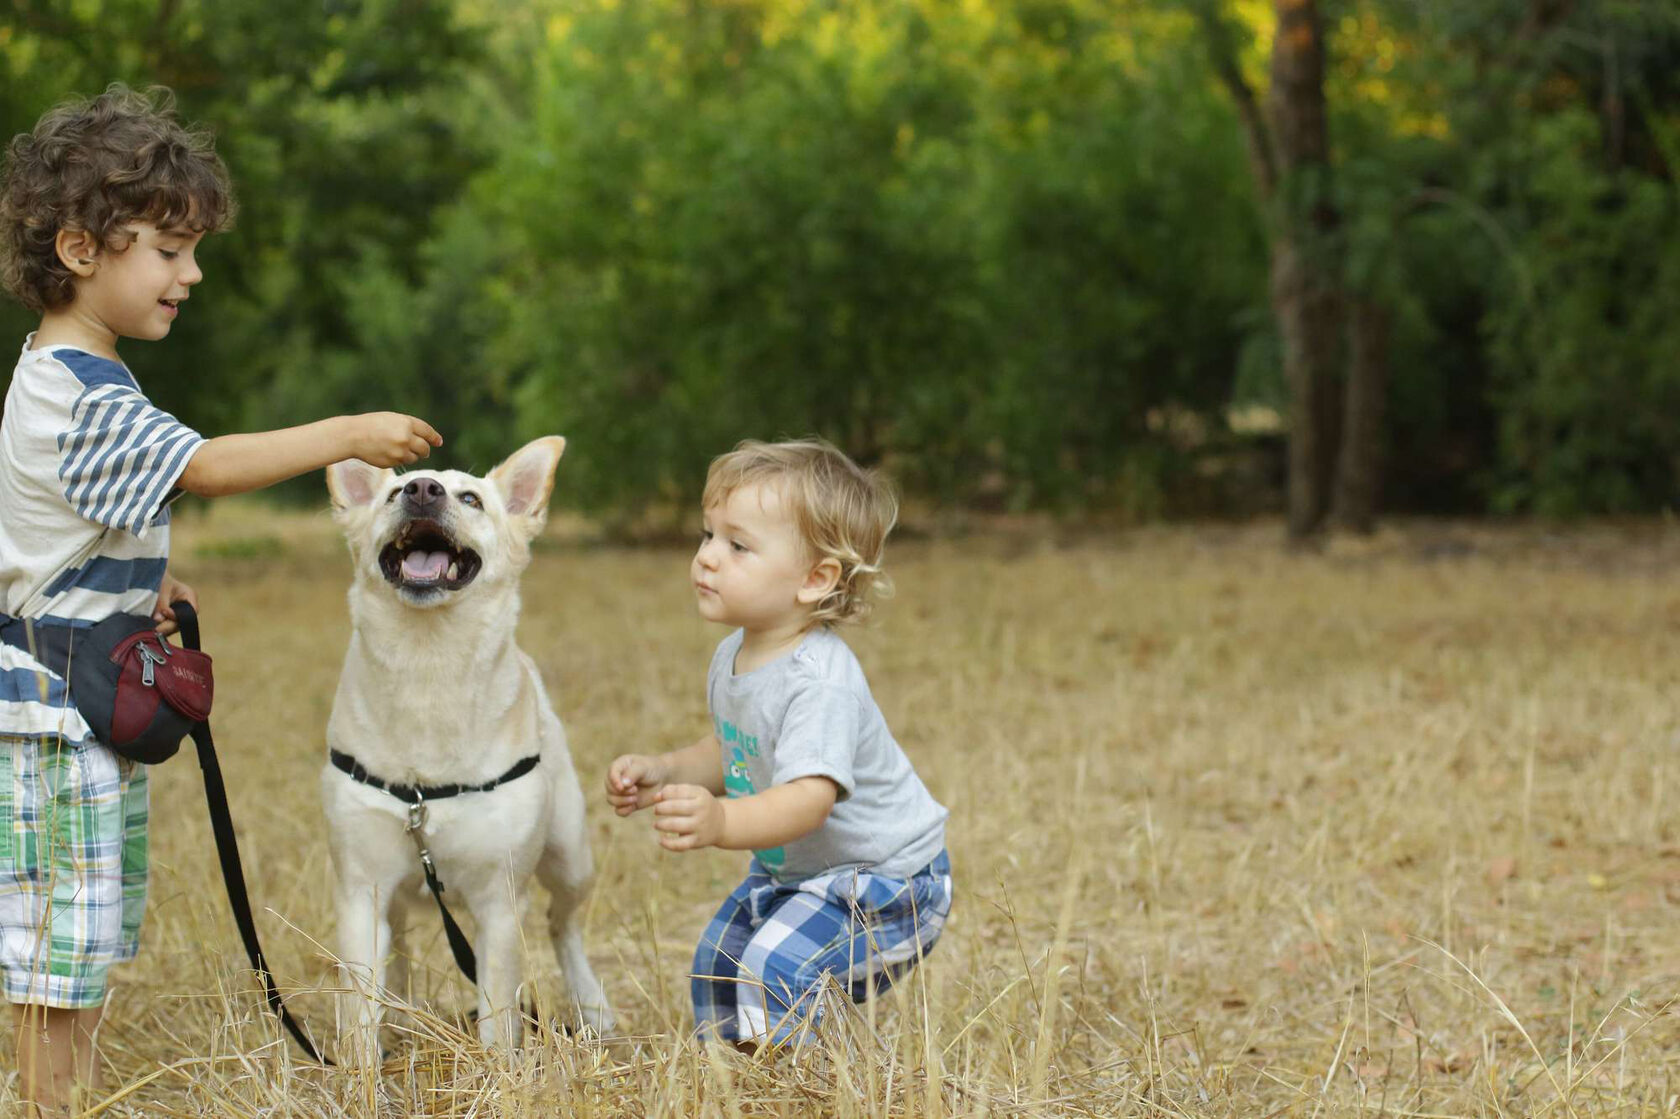 Мальчик играющий с собакой. Мальчик с собакой. Ребенок играет с собакой. Мальчик играет с собакой. Дети играющие с собакой.